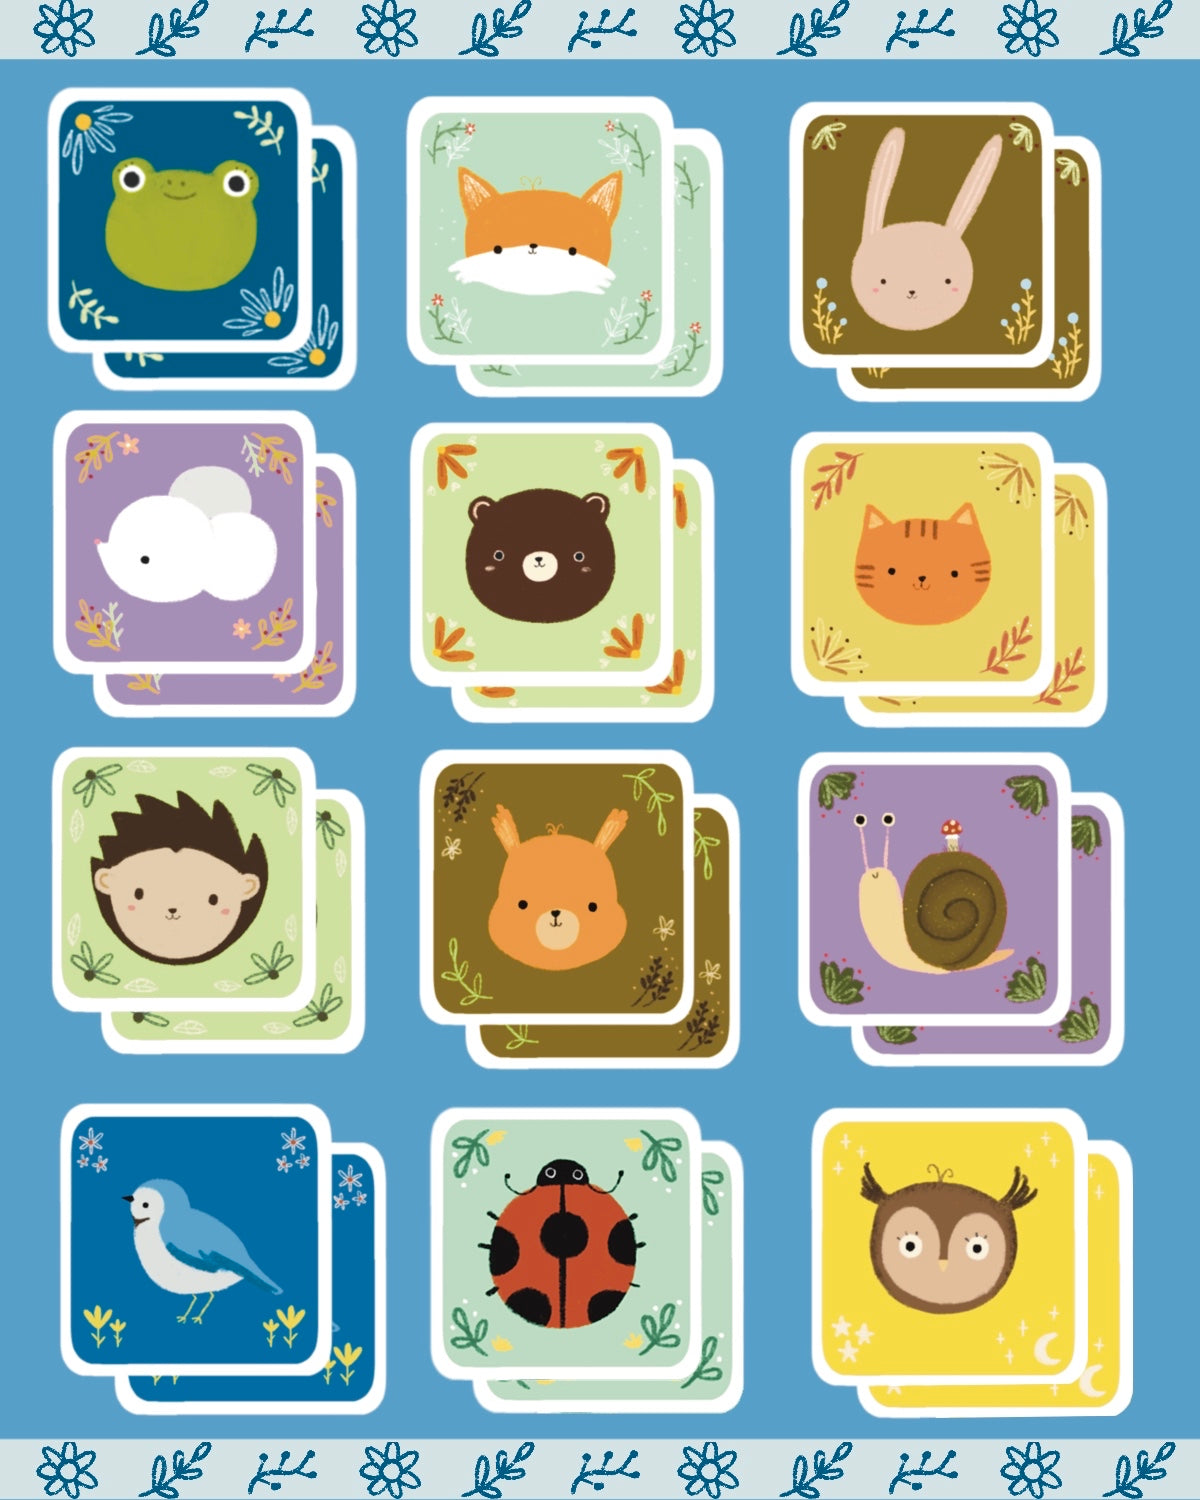 Digital animal memory game (12 pairs)